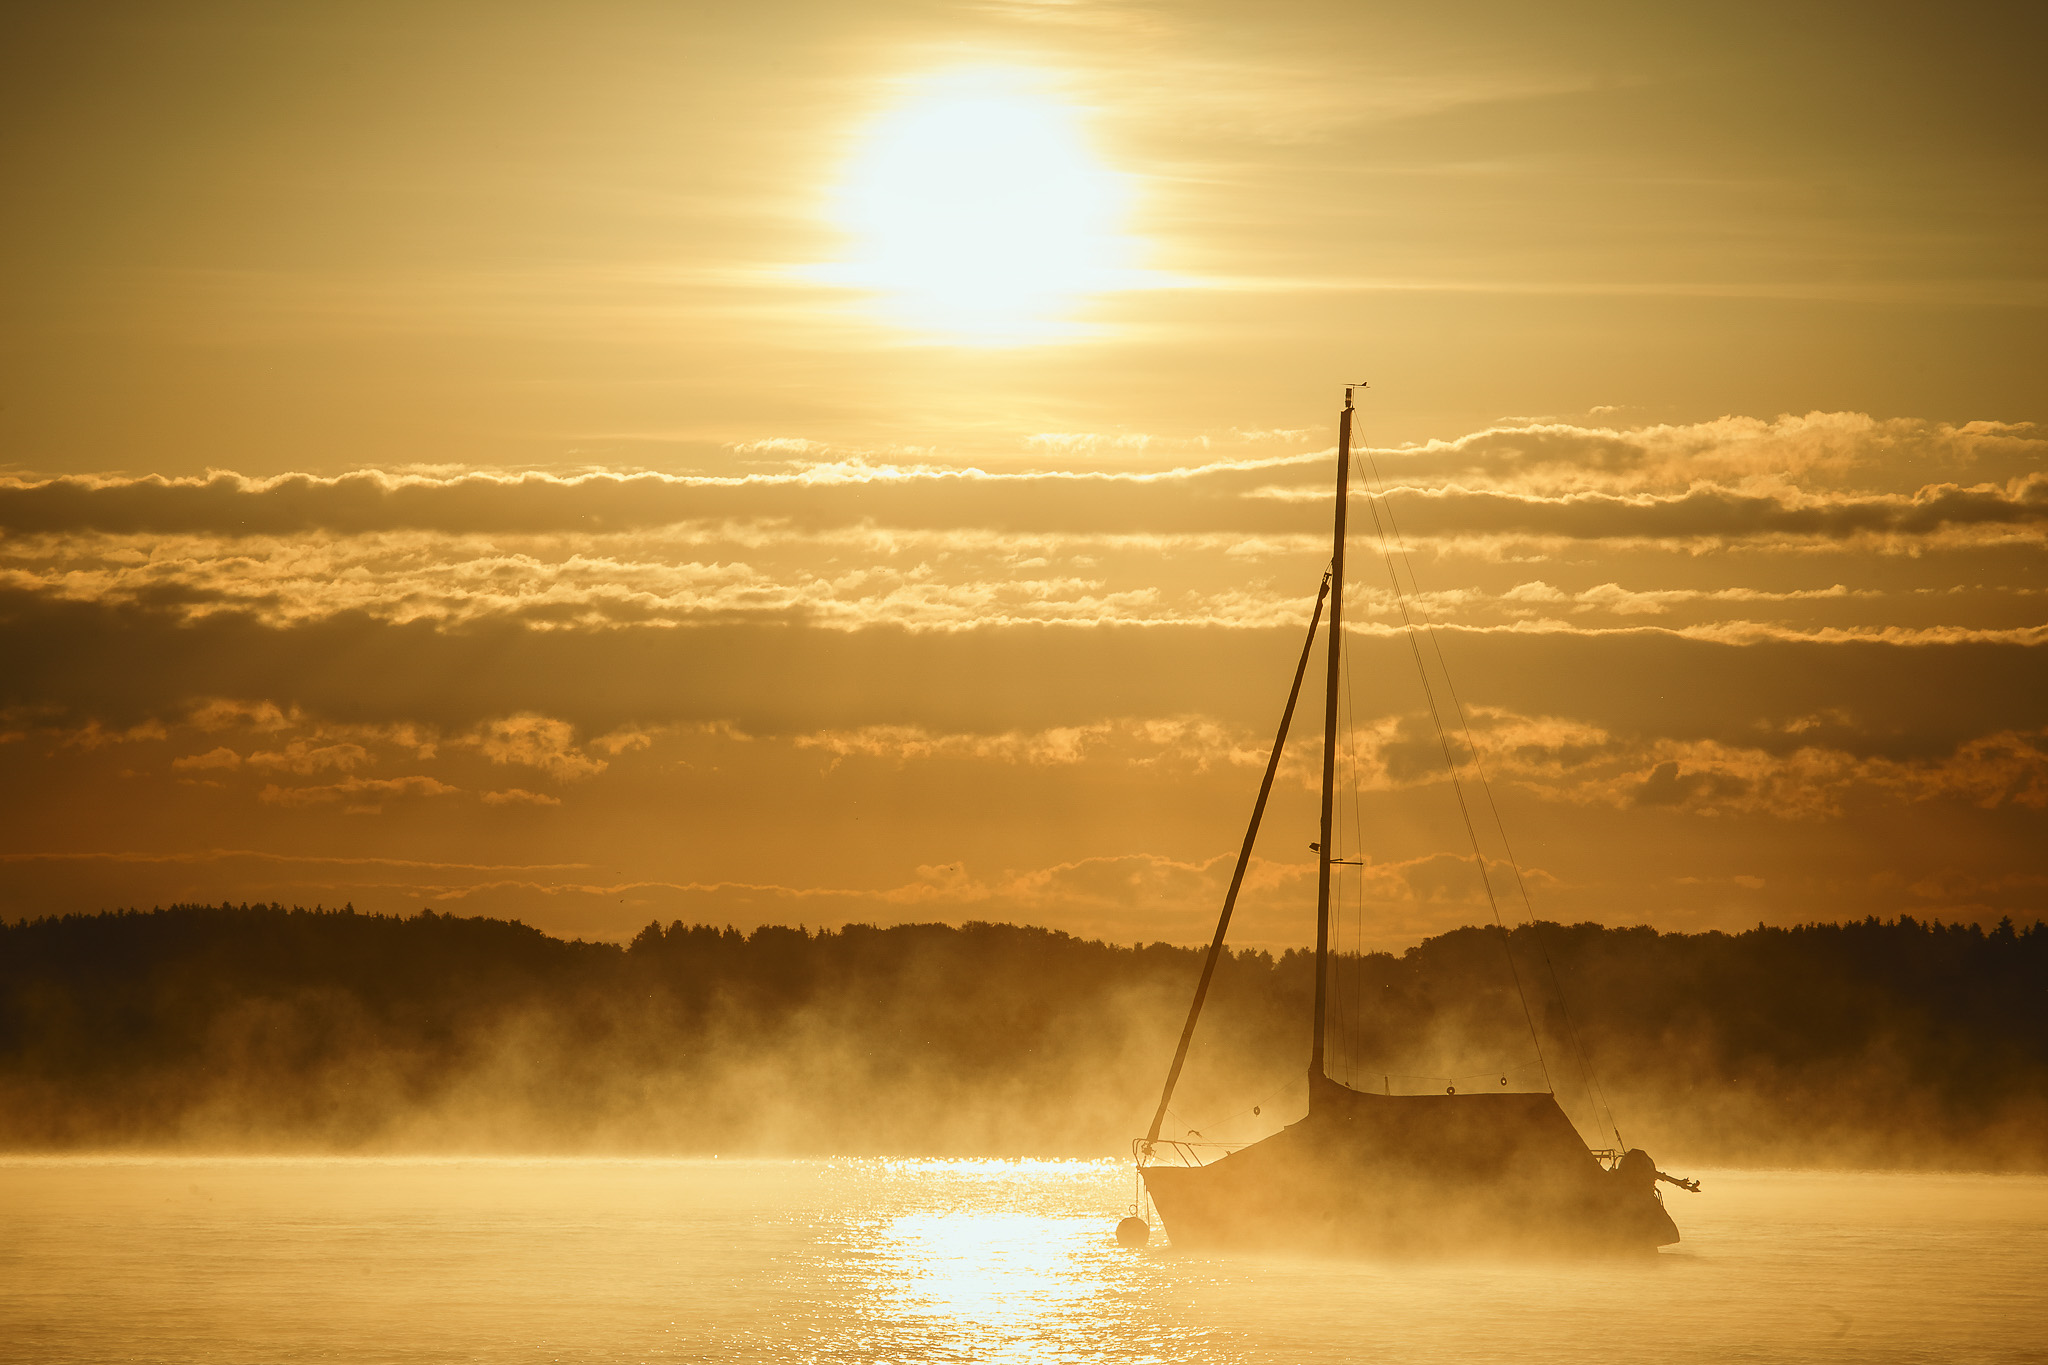 Guten Morgen. Sonnenaufgang über dem Fischerboot. Heute soll ein schöner Tag sein. Dann hoffen wir doch das beste und freuen uns schon auf das Wochenende.  Schönen Tag! #Chiemsee #Chiemgau #Sonnenaufgang #Bayern #Bayerischemeer #Ruhpolding #Malerwinkel #Boot #Schiff #baumgartnermarkusfotografie #mbfotografie